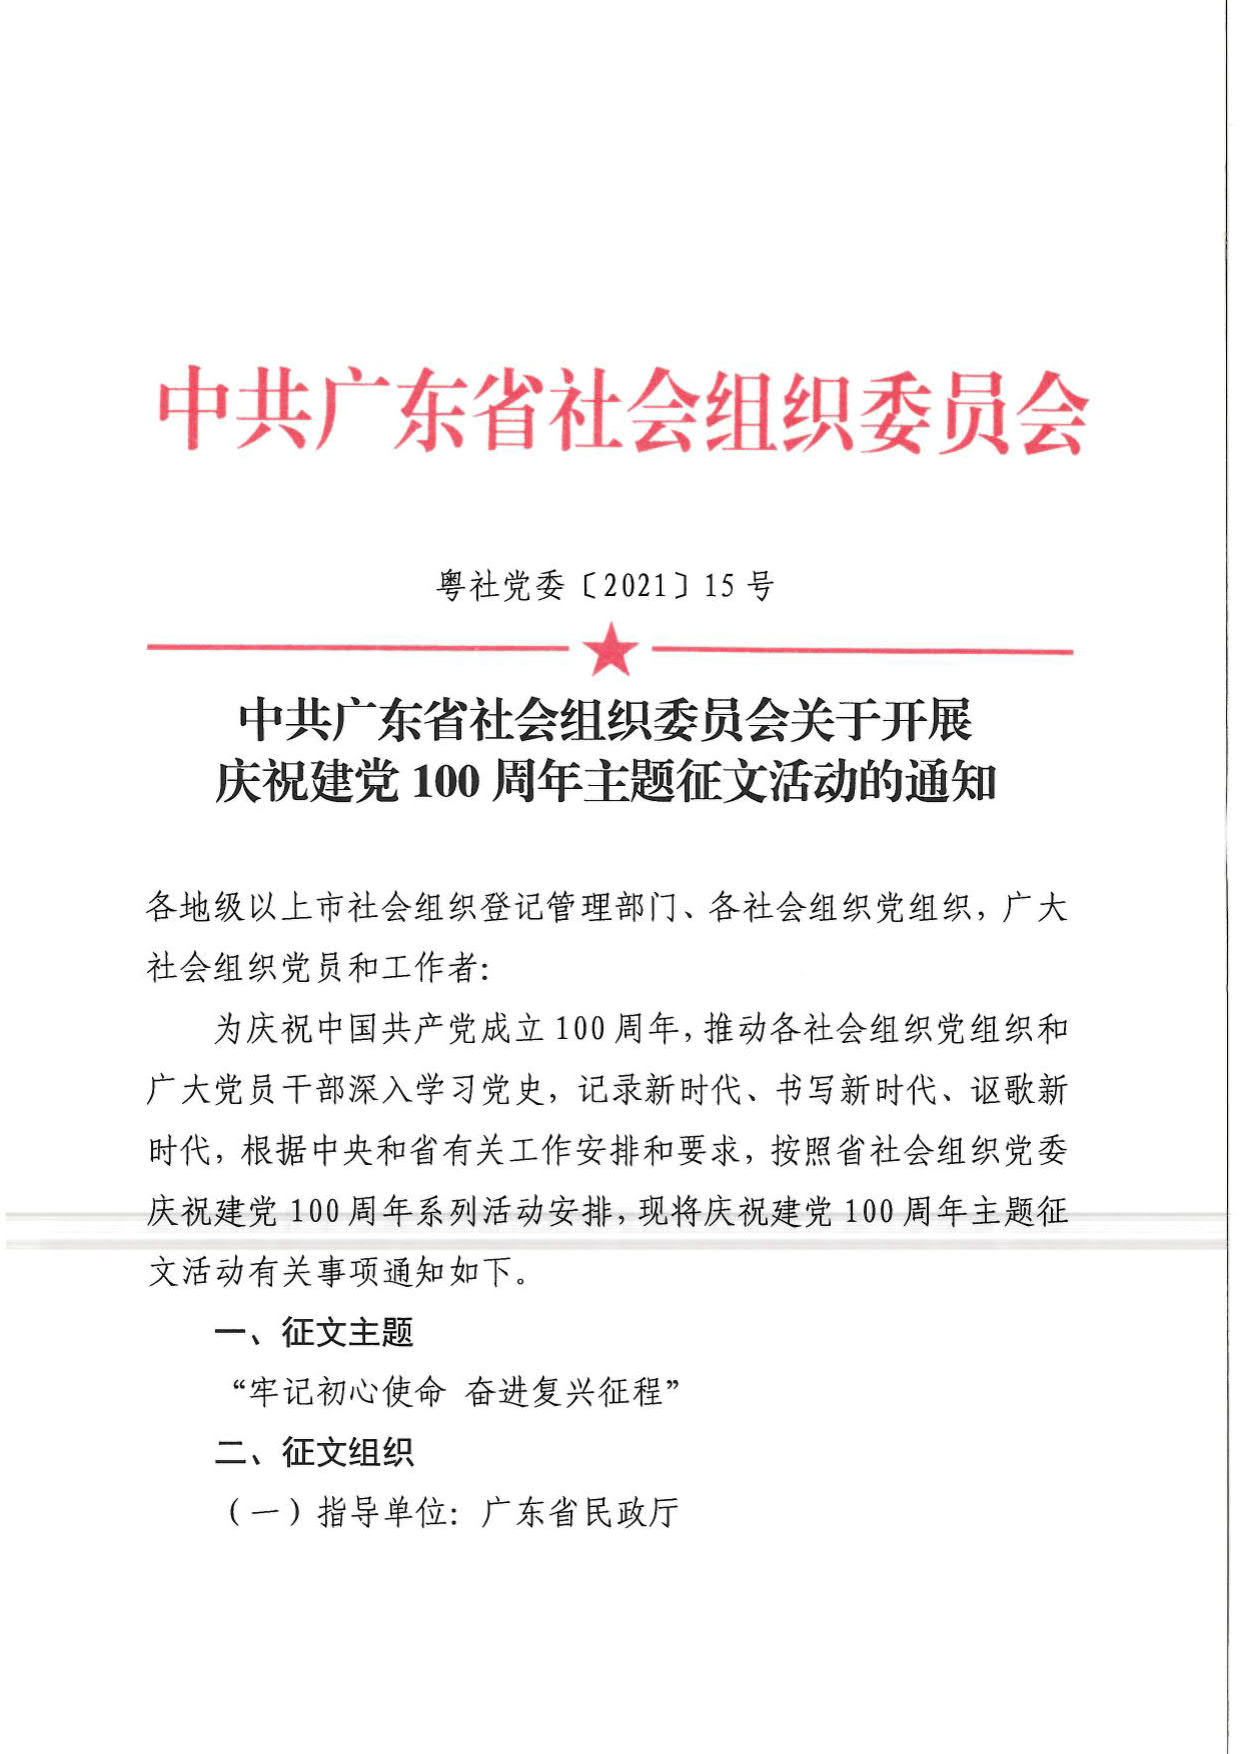 中共广东省社会组织委员会关于开展庆祝建党100周年主题征文活动的通知_1.jpg